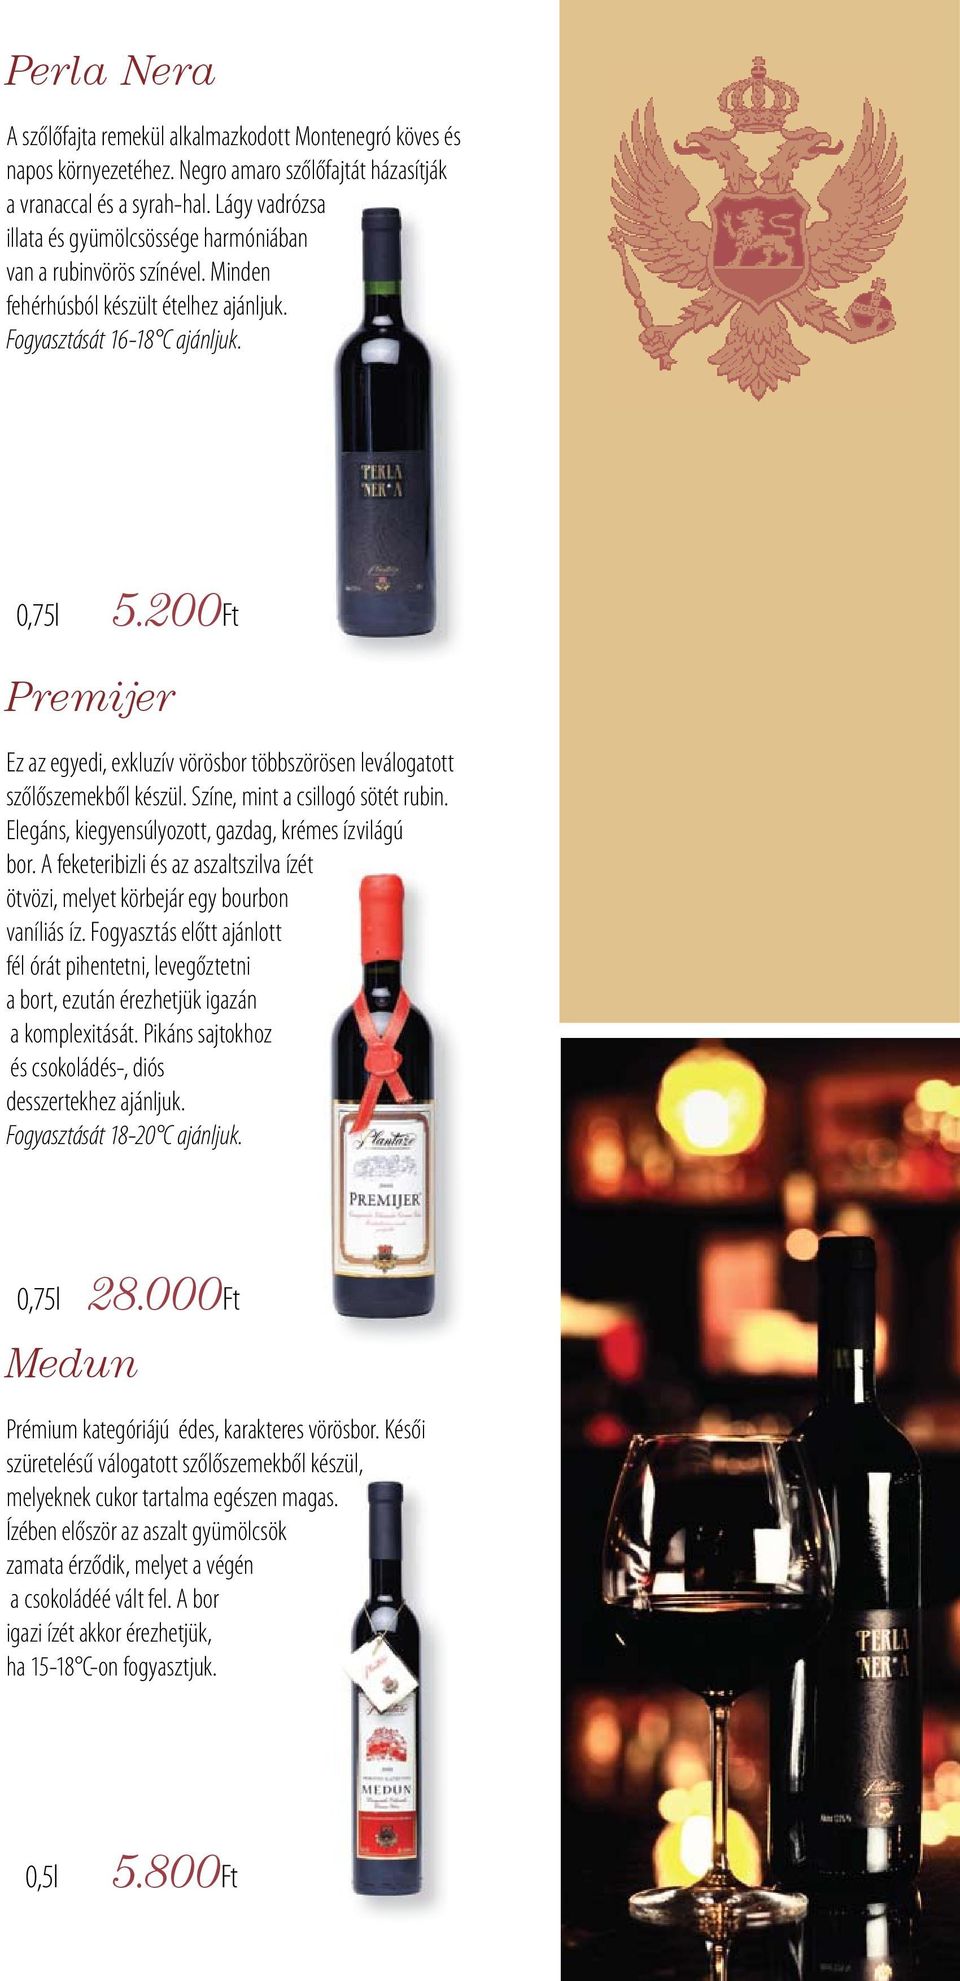 200Ft Premijer Ez az egyedi, exkluzív vörösbor többszörösen leválogatott szőlőszemekből készül. Színe, mint a csillogó sötét rubin. Elegáns, kiegyensúlyozott, gazdag, krémes ízvilágú bor.